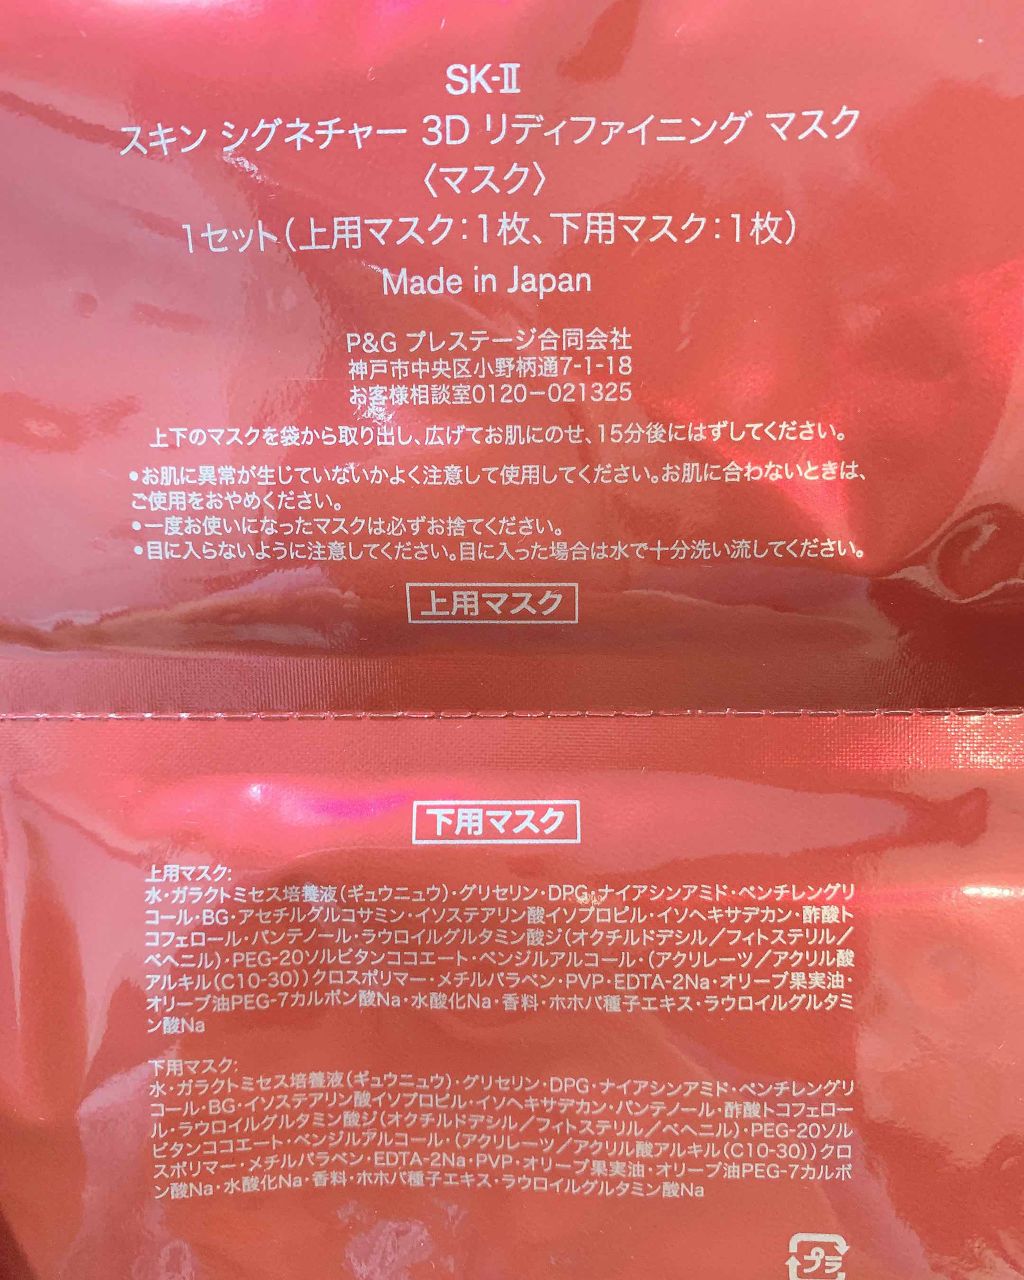 コスメ/美容SK-II スキン シグネチャー 3D リディファイニング マスク 20枚セット